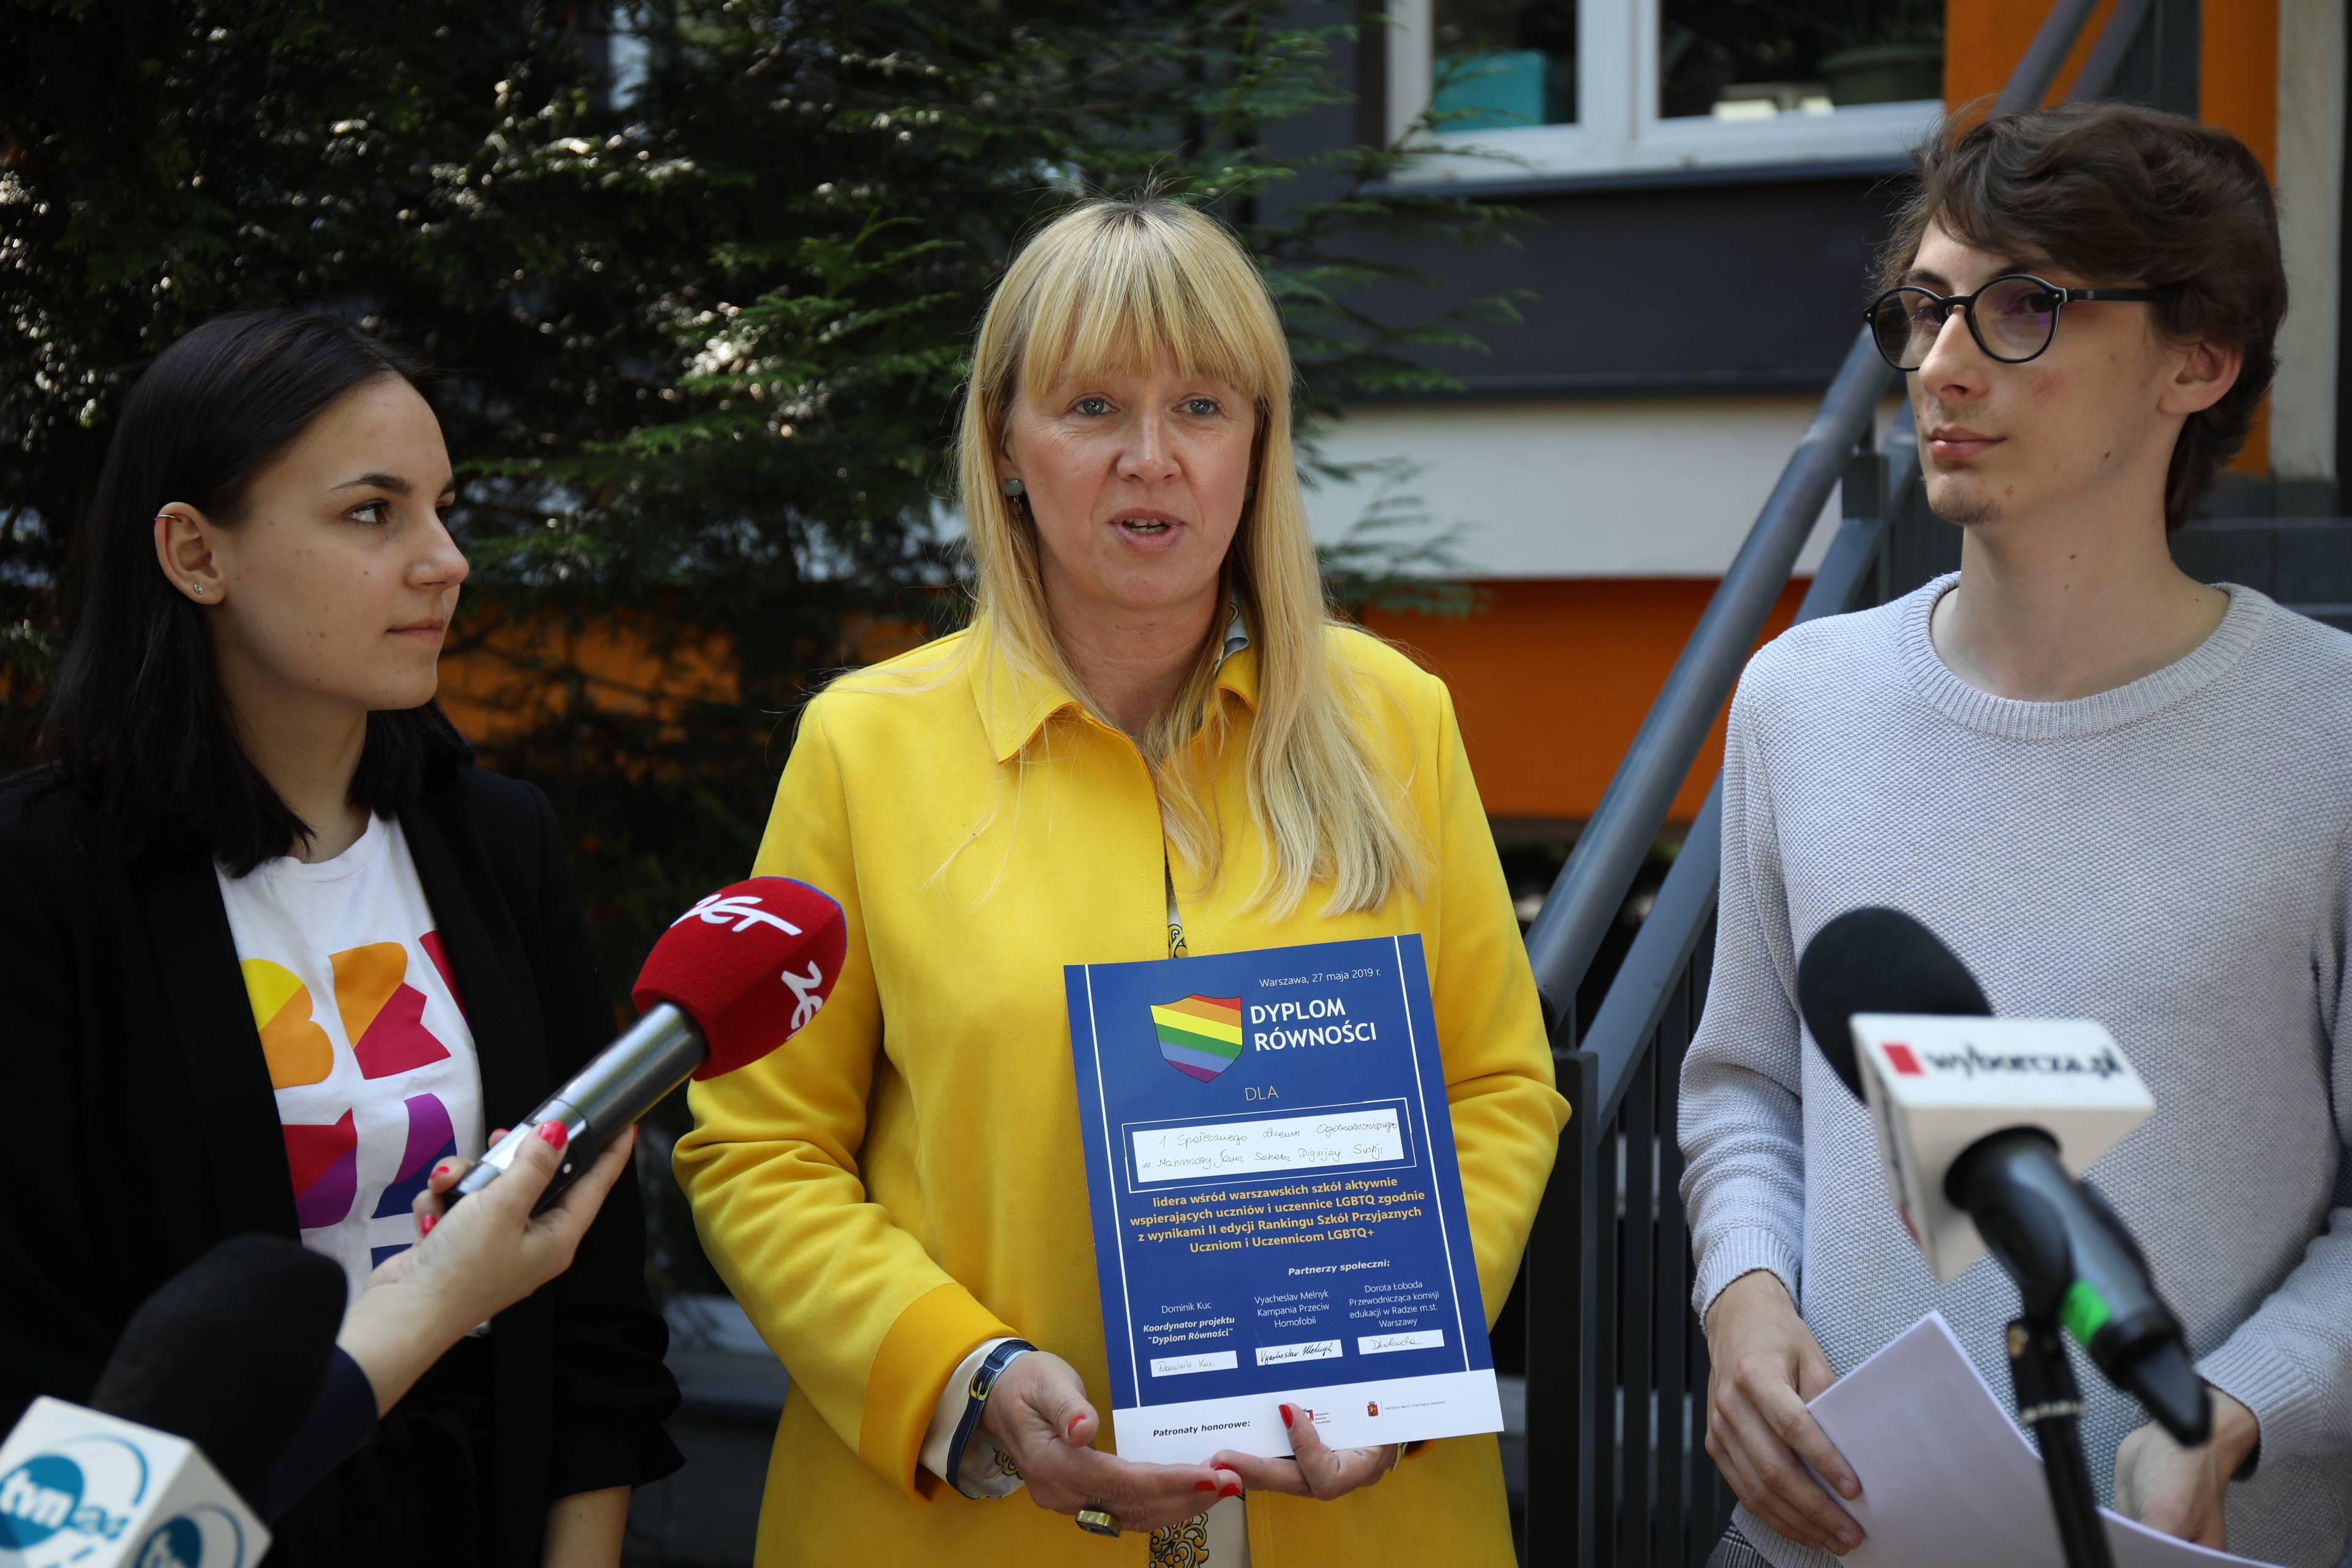 Na zdjęciu dyrektorka ISLO "Bednarska" w Warszawie odbierająca dyplom za przyjazność uczniom LGBT+